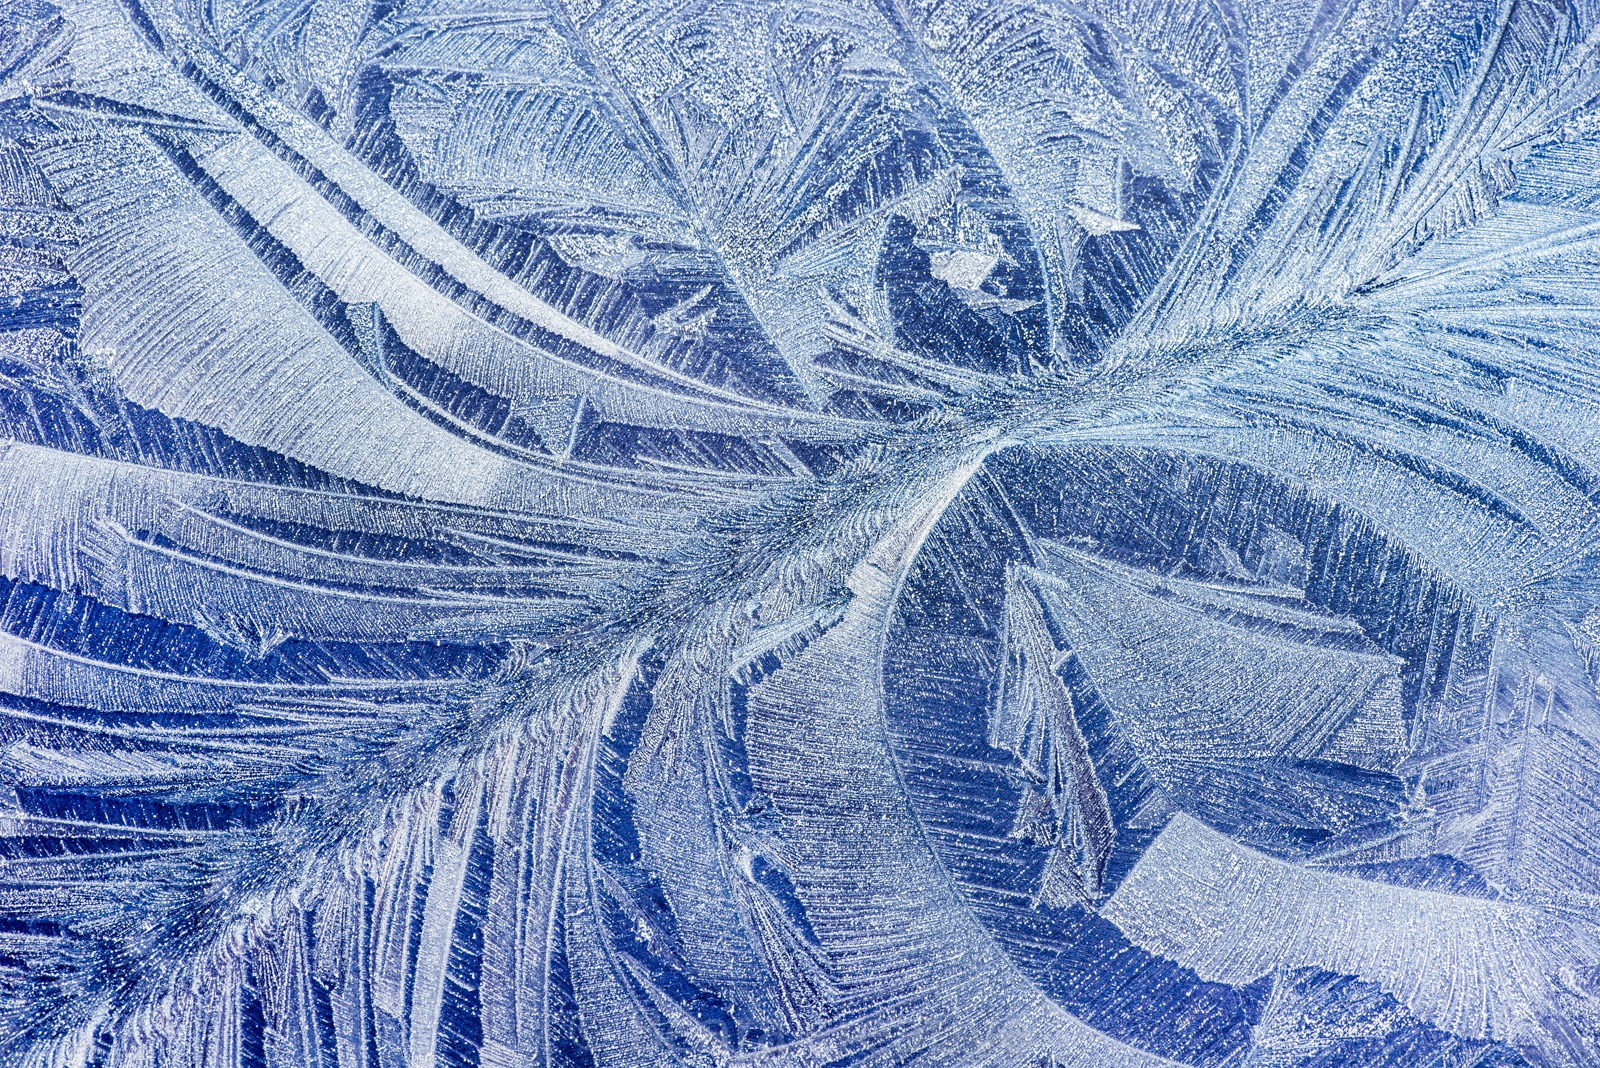 Hoar frost pattern on car